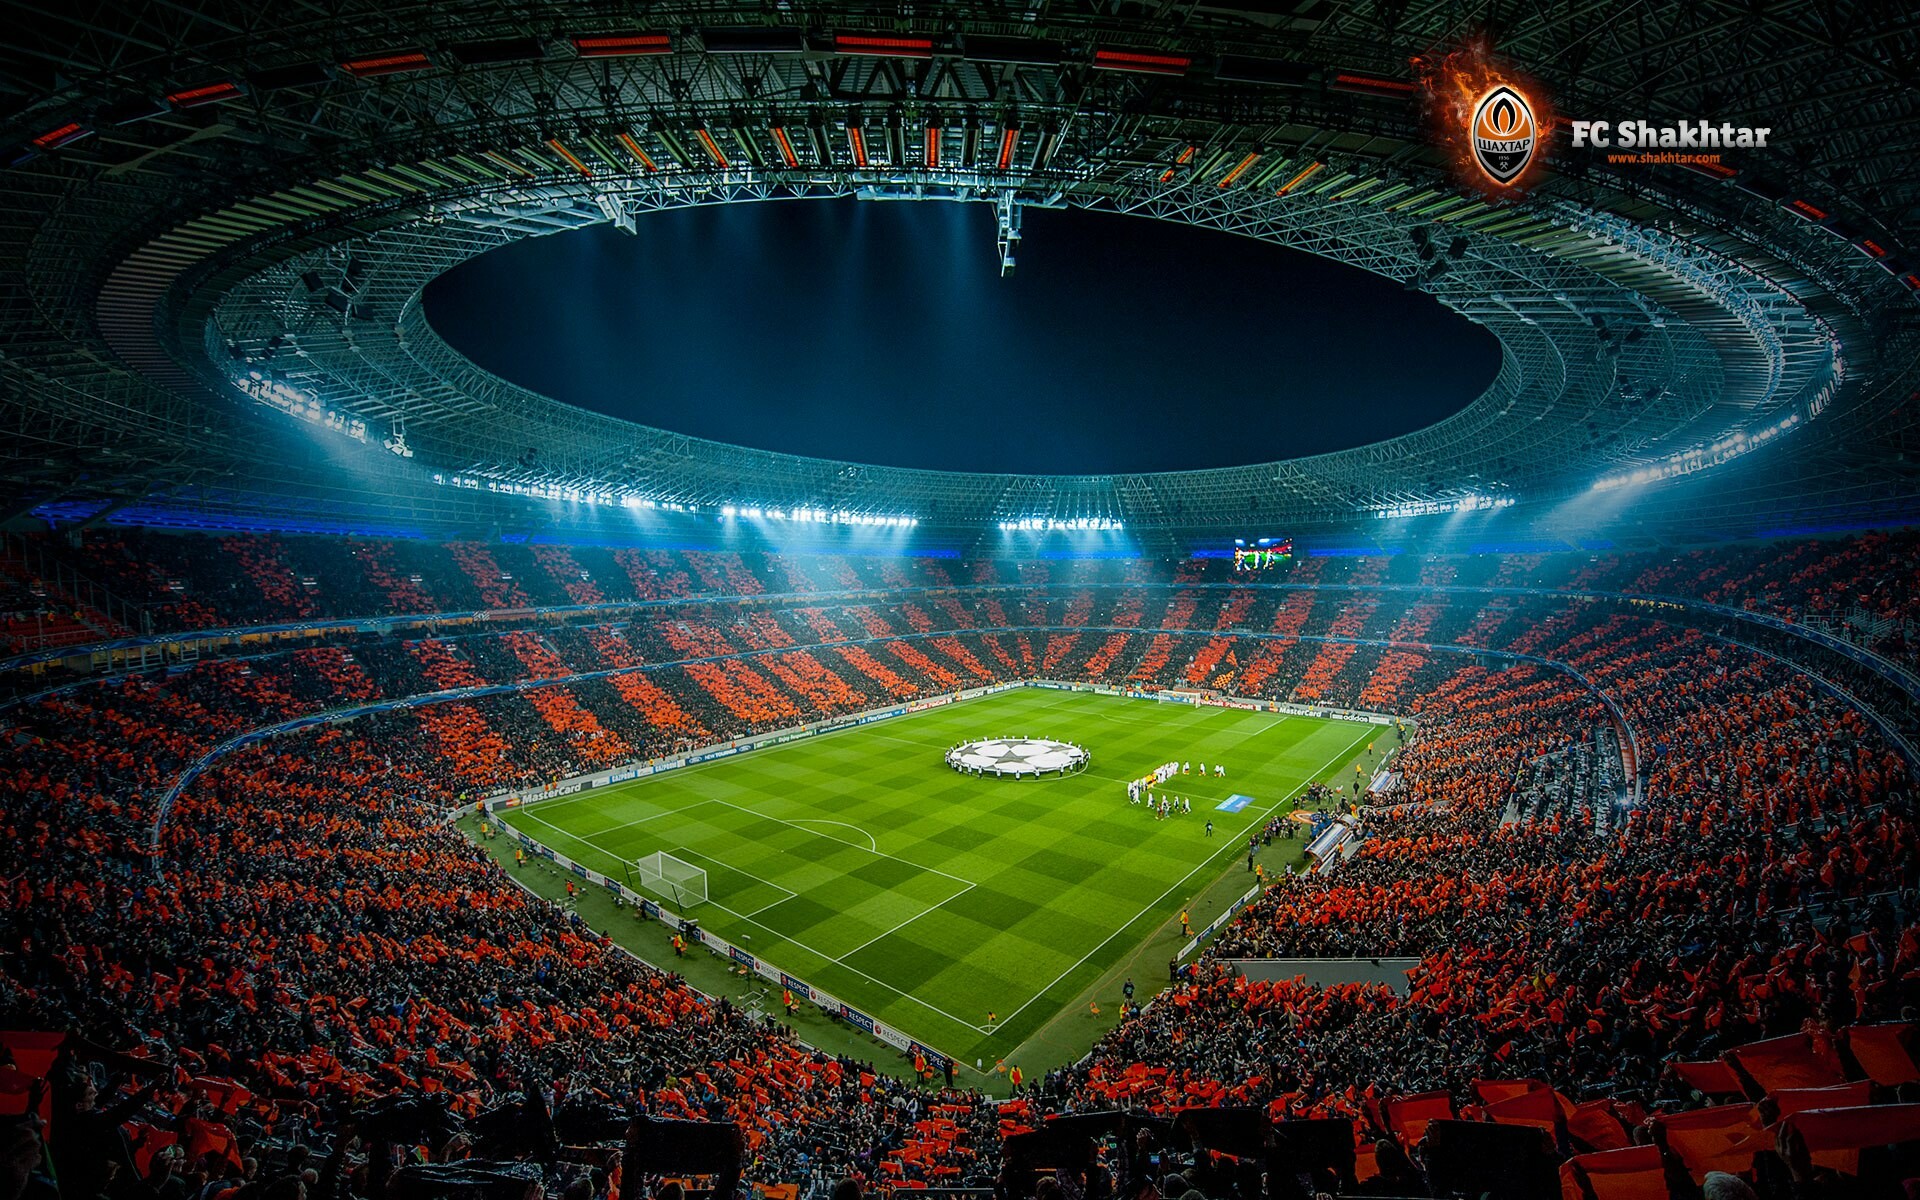 Донбасс Арена в топ 20 лучших стадионов мира - рейтинг Marca - Новости футбола